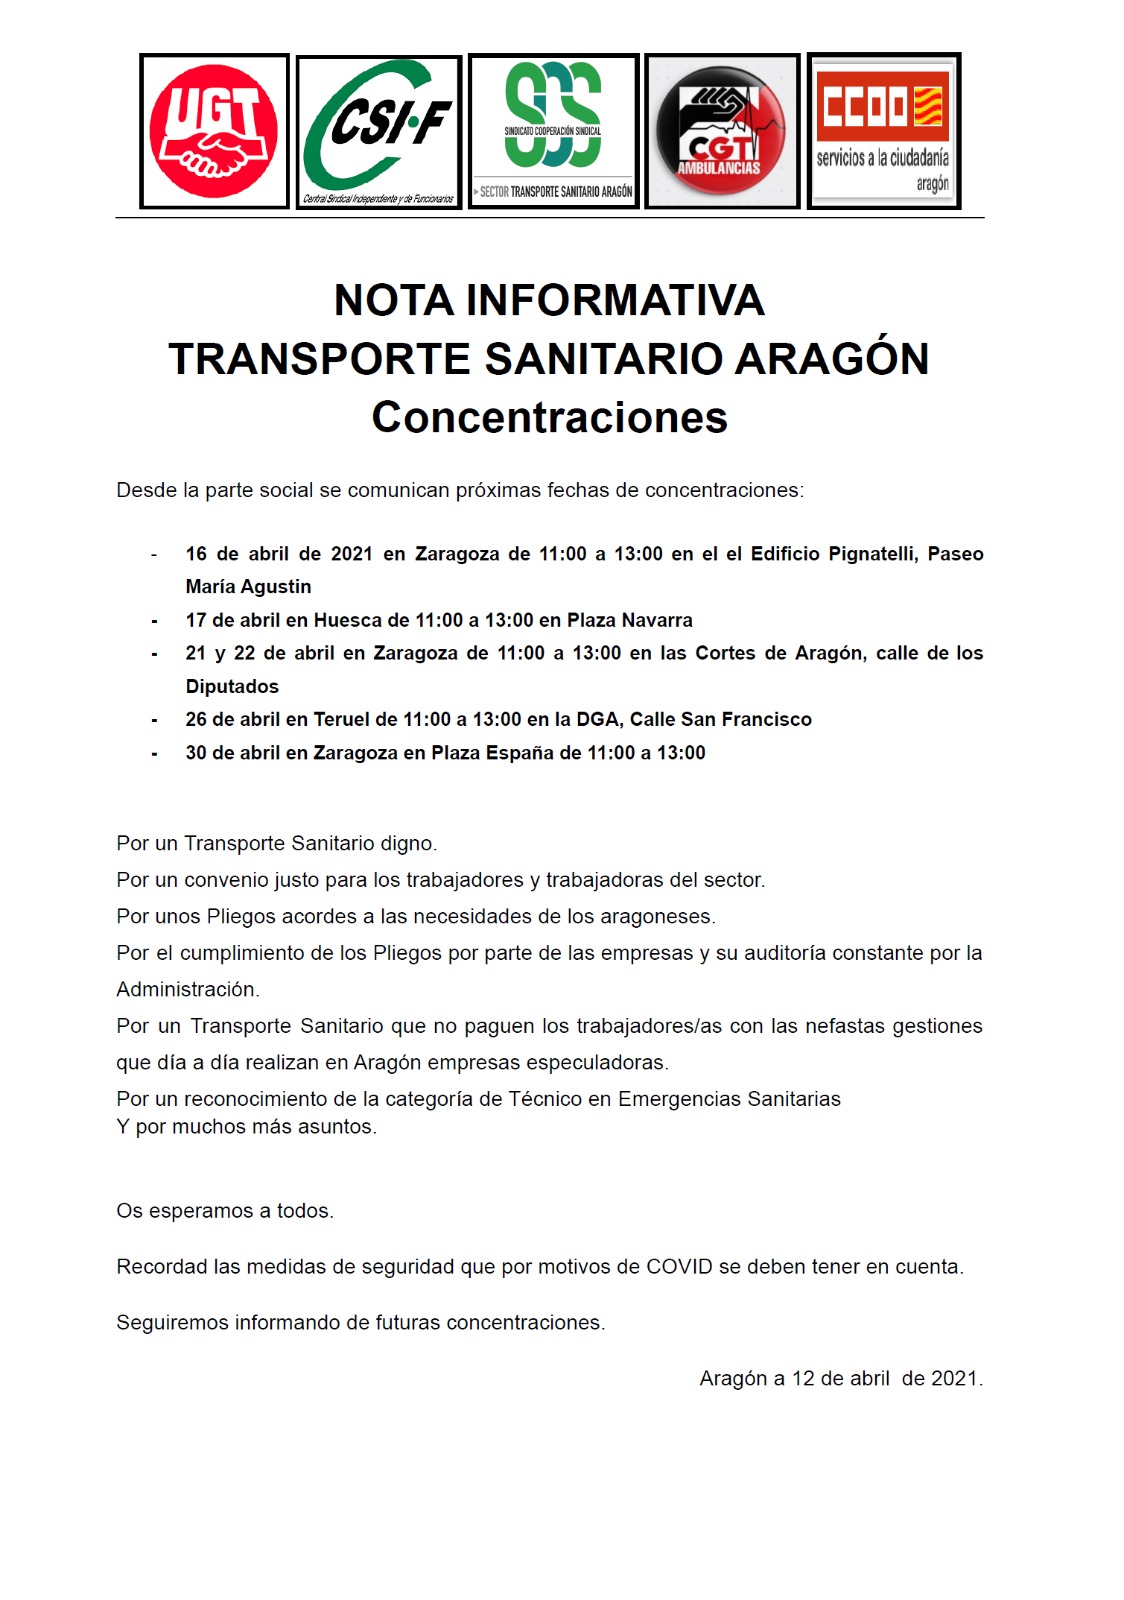 CONCENTRACIONES DEL TRANSPORTE SANITARIO EN ARAGÓN